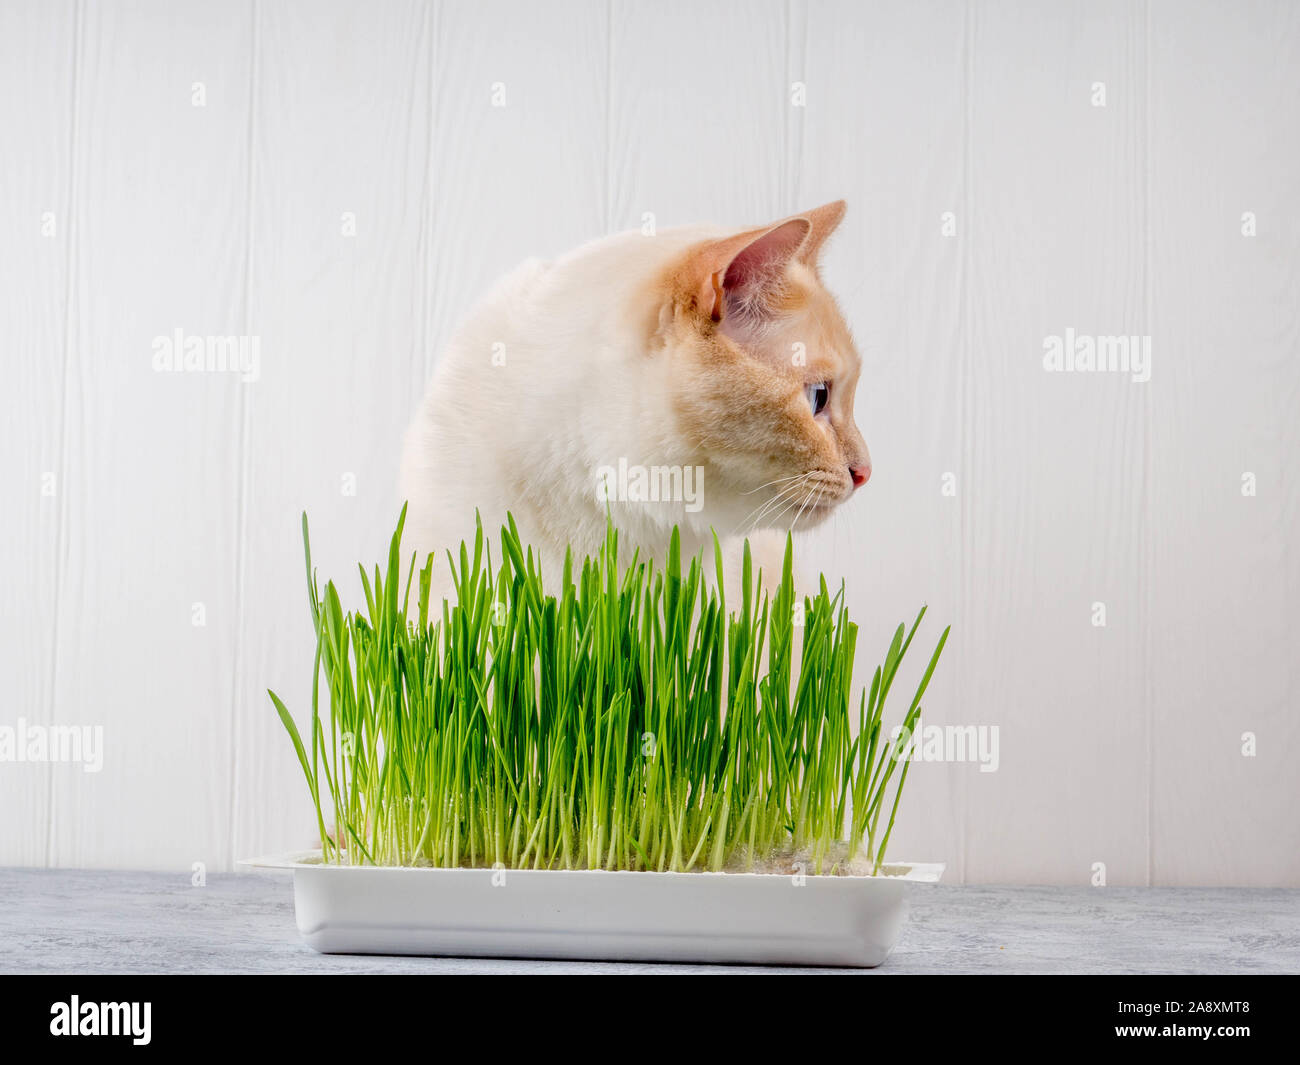 In der Nähe eines schönen Katze essen frische grüne Gras. Pet-Gras.  Natürliche hairball Behandlung, grünes saftiges Gras für Katzen, gekeimten  Hafer nützlich für Katzen Stockfotografie - Alamy